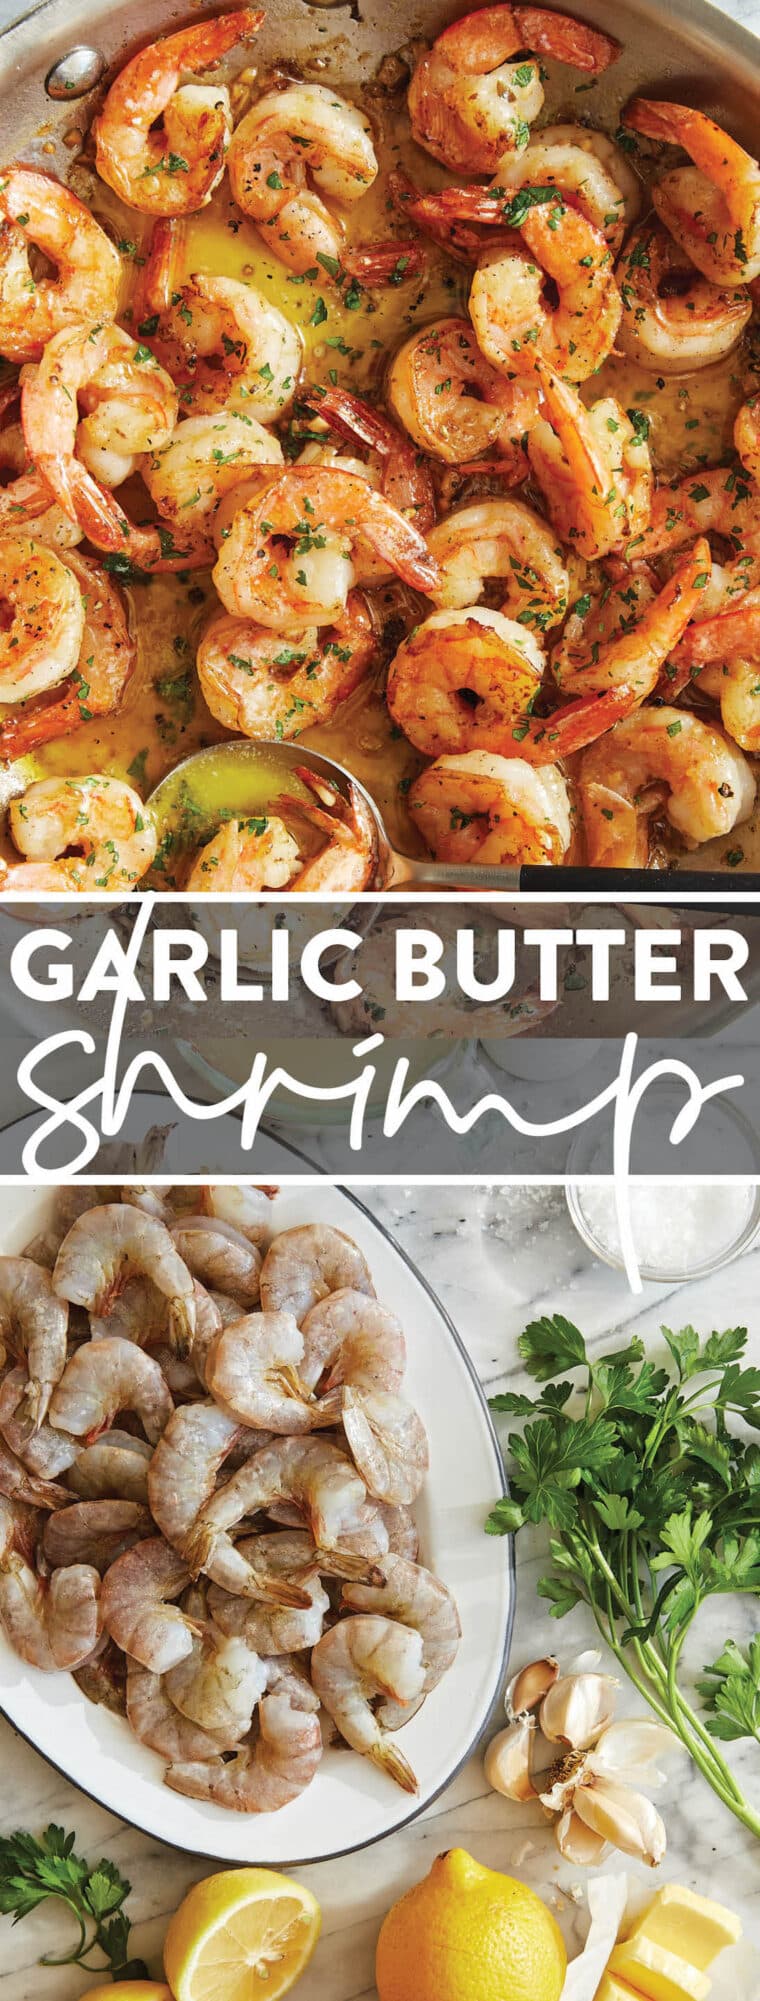 Sheet Pan Garlic Butter Shrimp - Damn Delicious